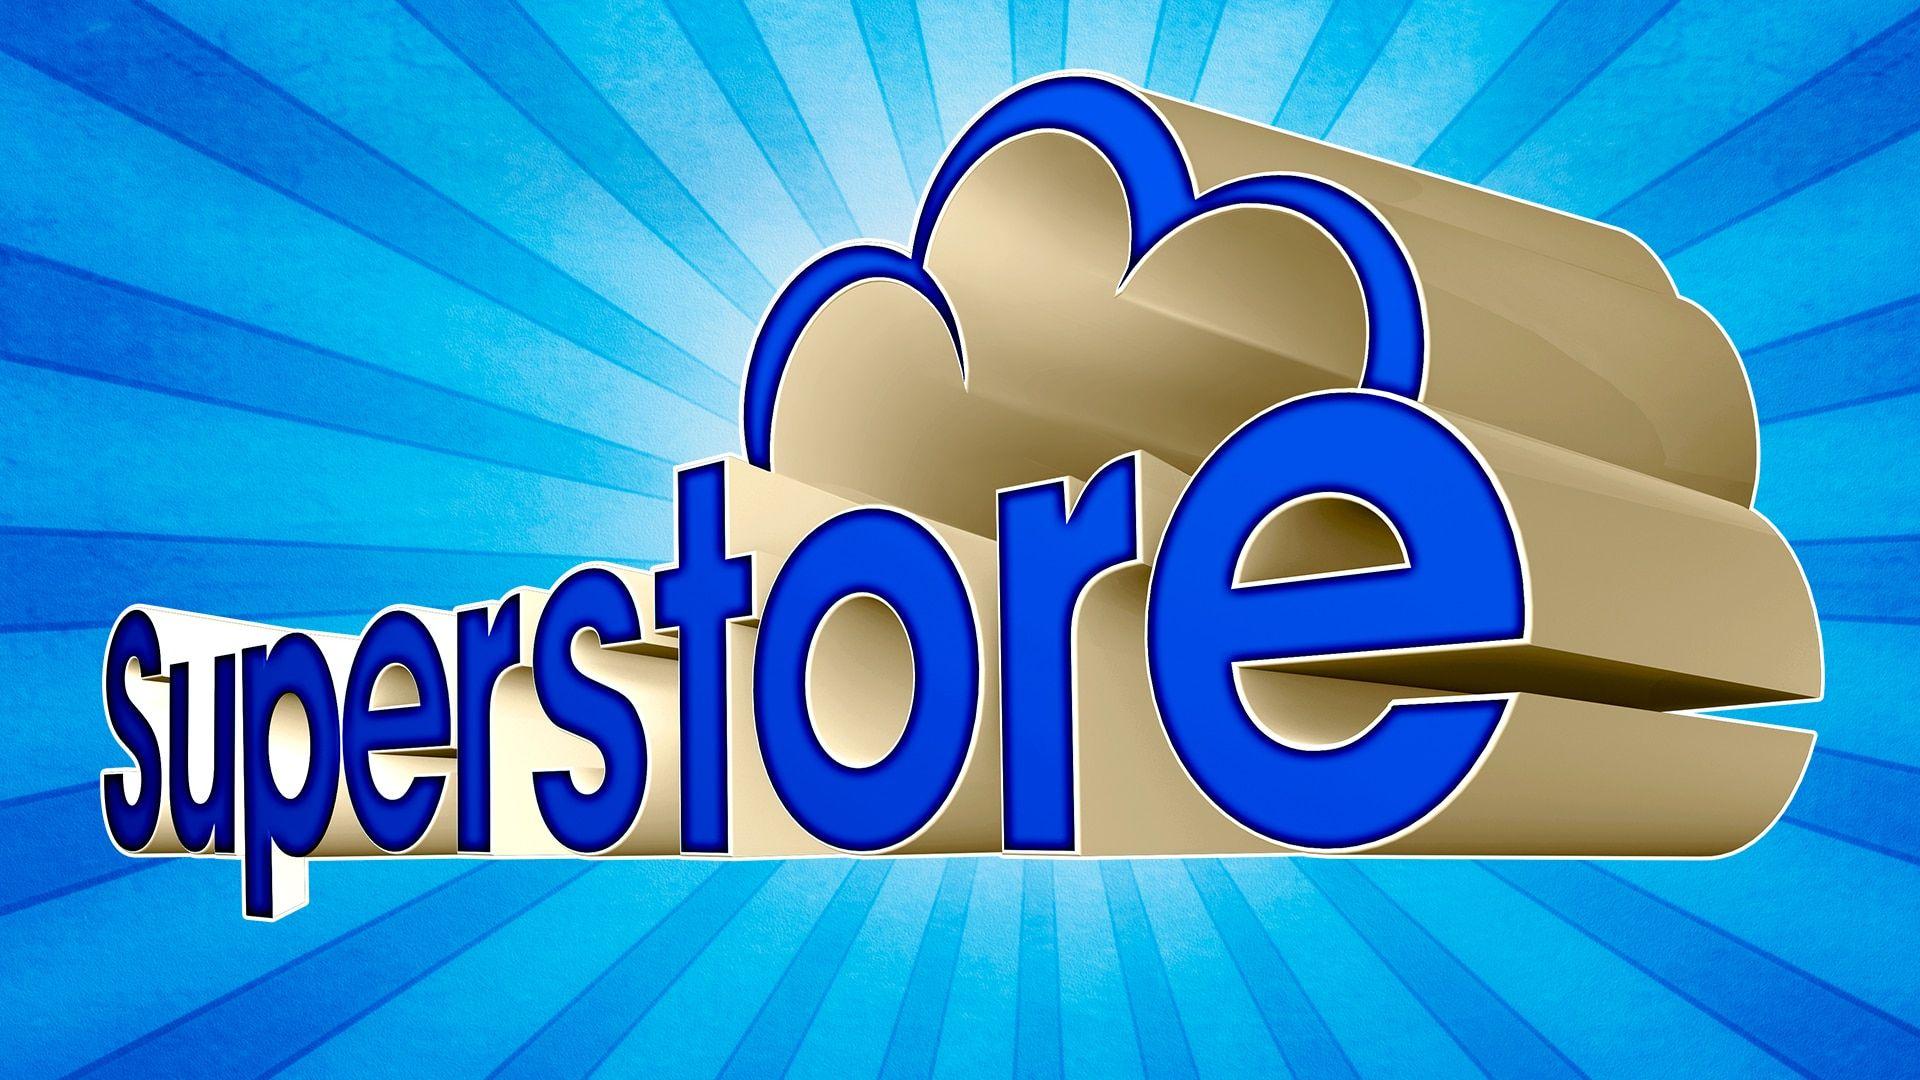 Superstore Logo - Superstore